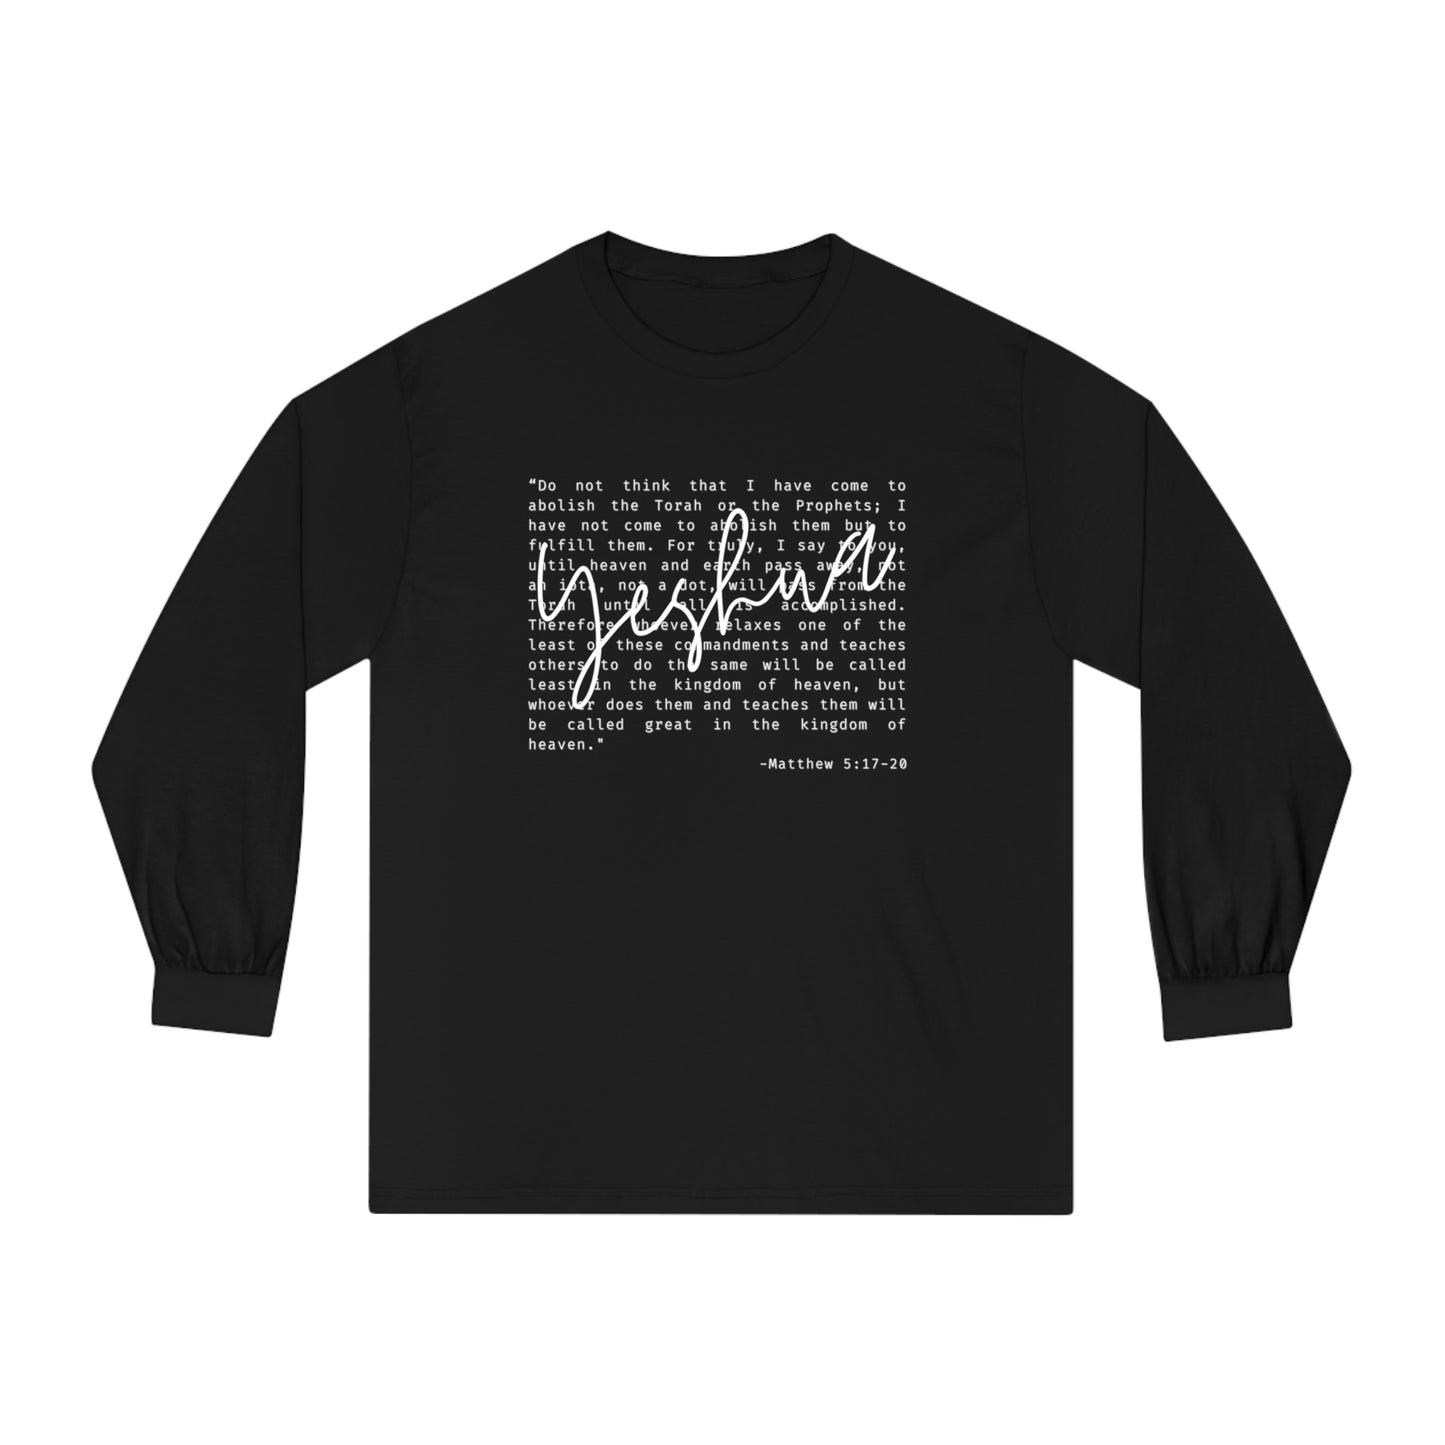 Yeshua Unisex Long Sleeve T-Shirt